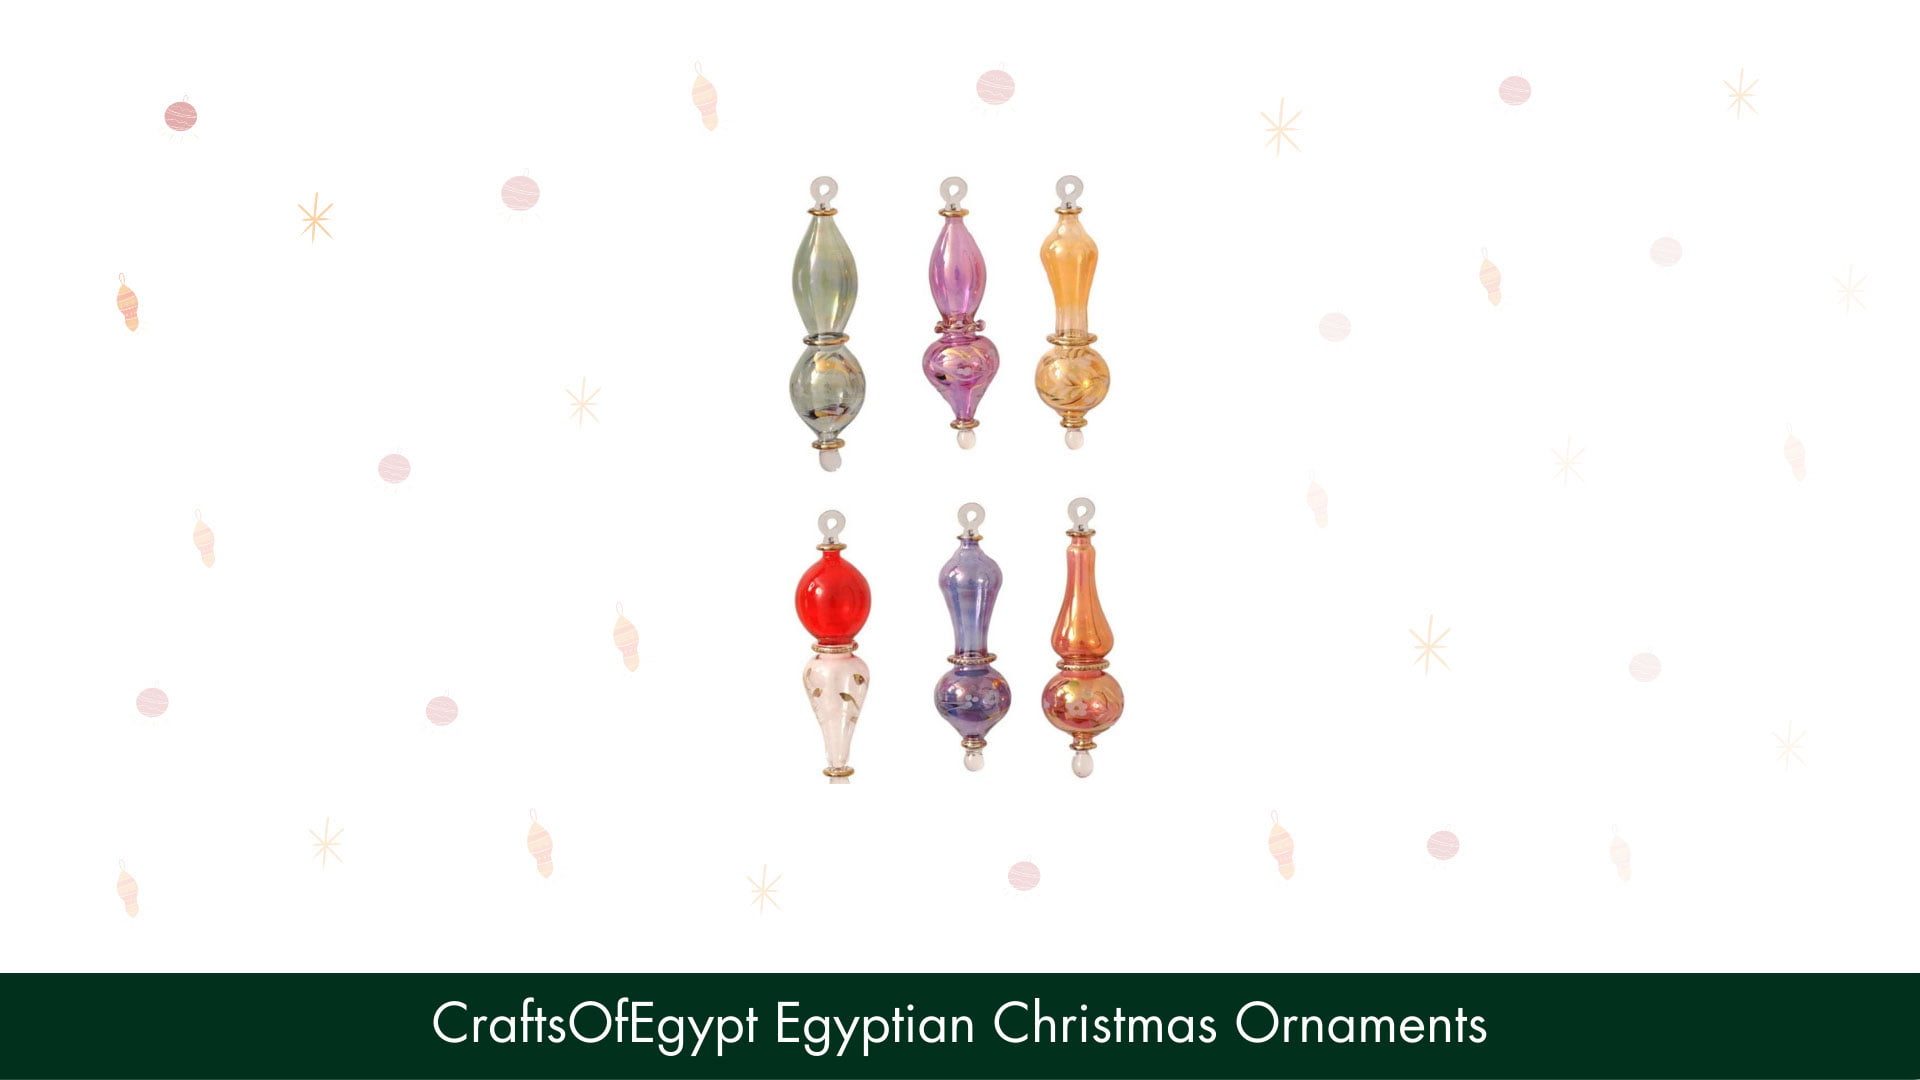 CraftsOfEgypt Egyptian Christmas Ornaments